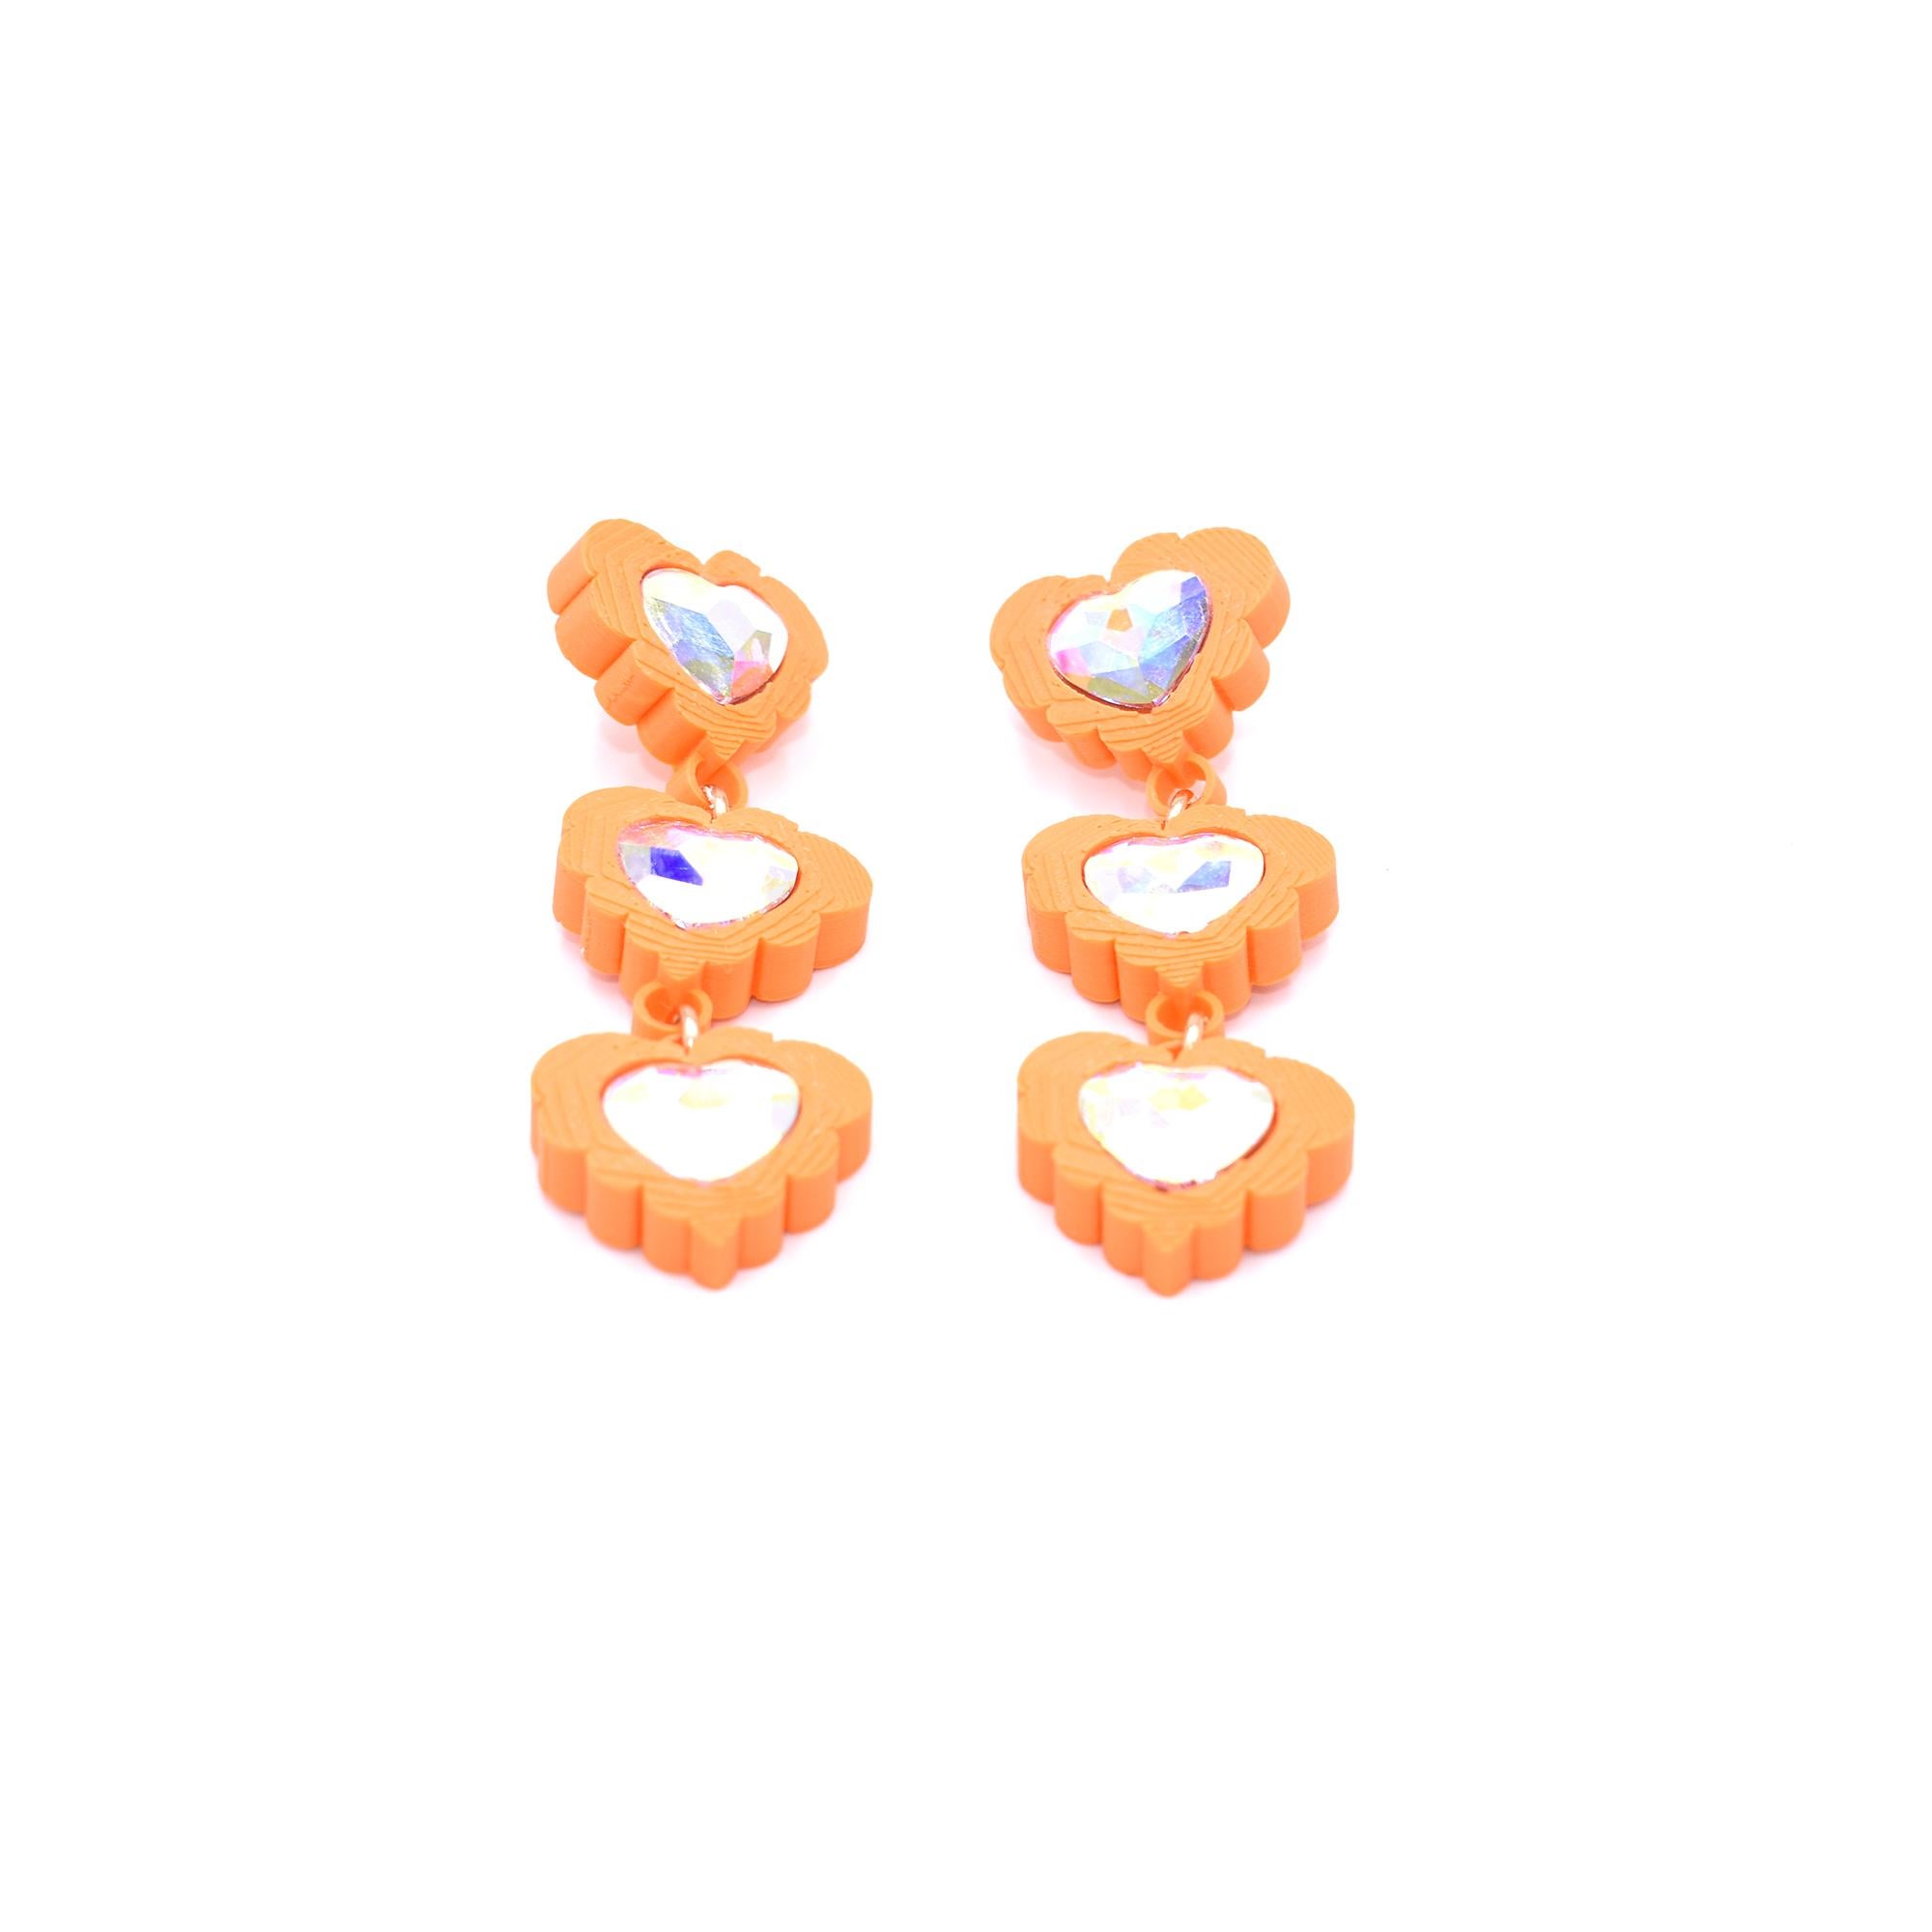 Modern 3d Printed Crystal Heart Fantasy Love Earrings, Tangerine For Sale